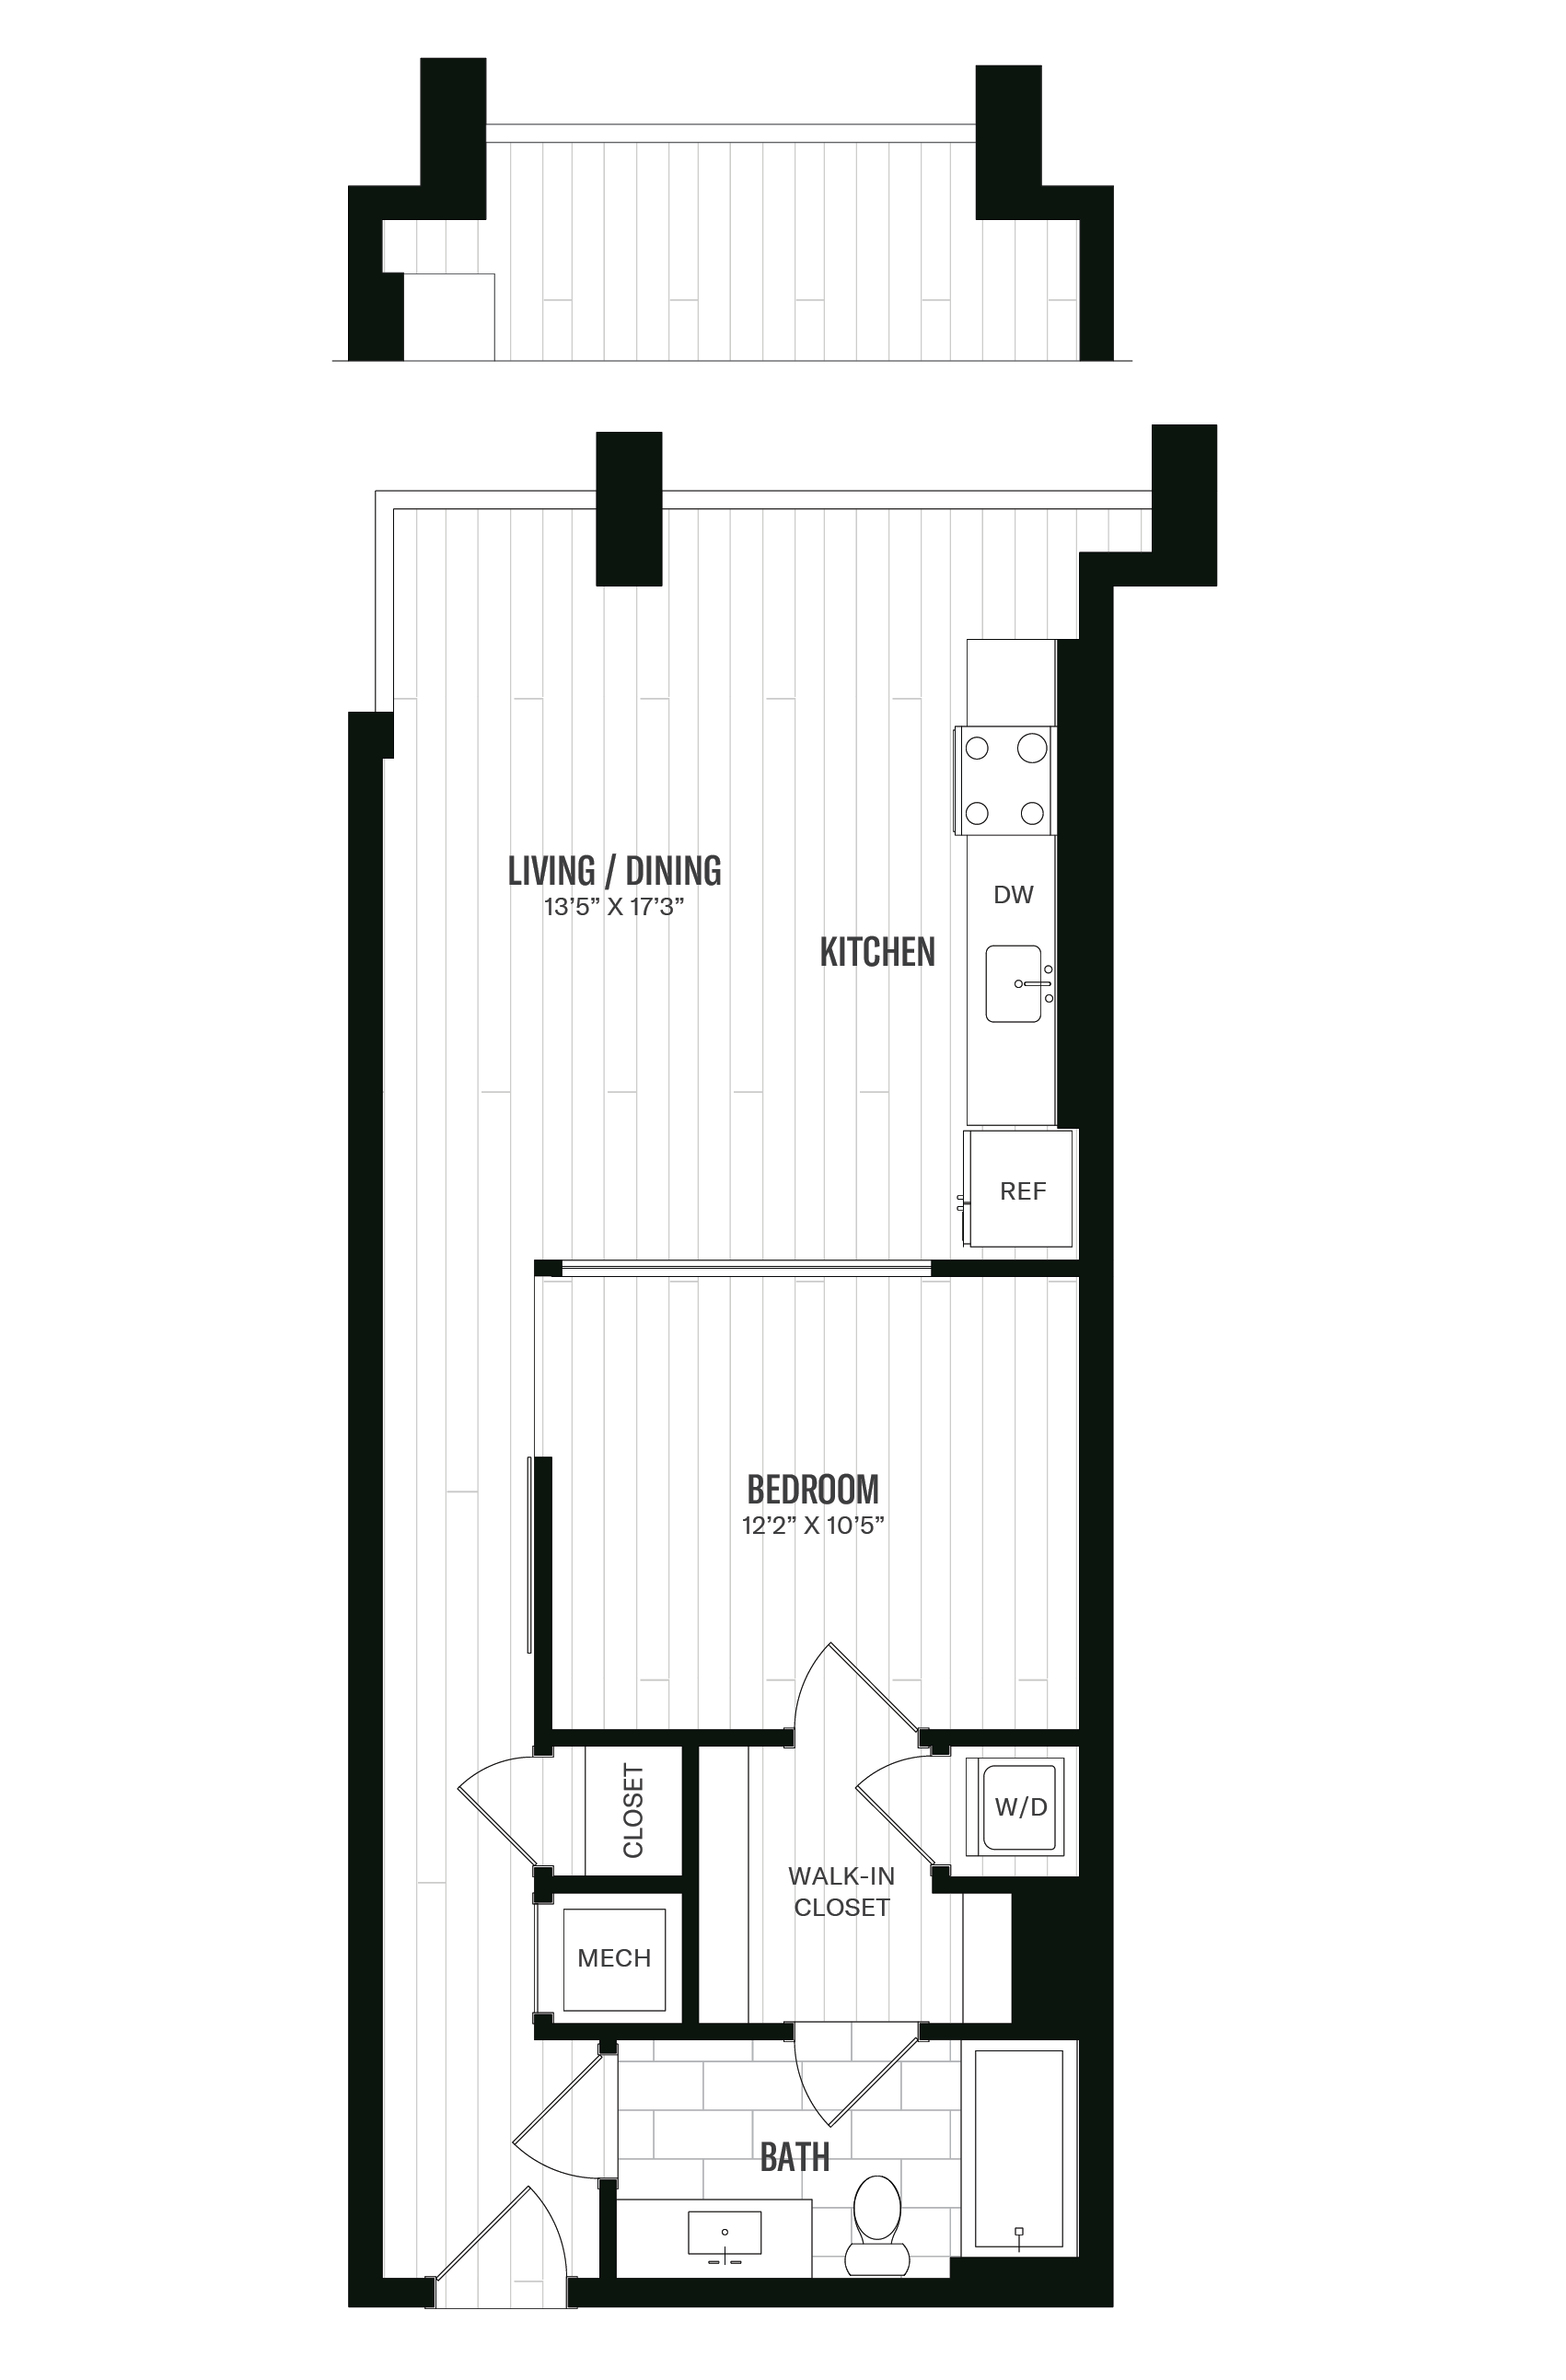 Floorplan image of unit 538